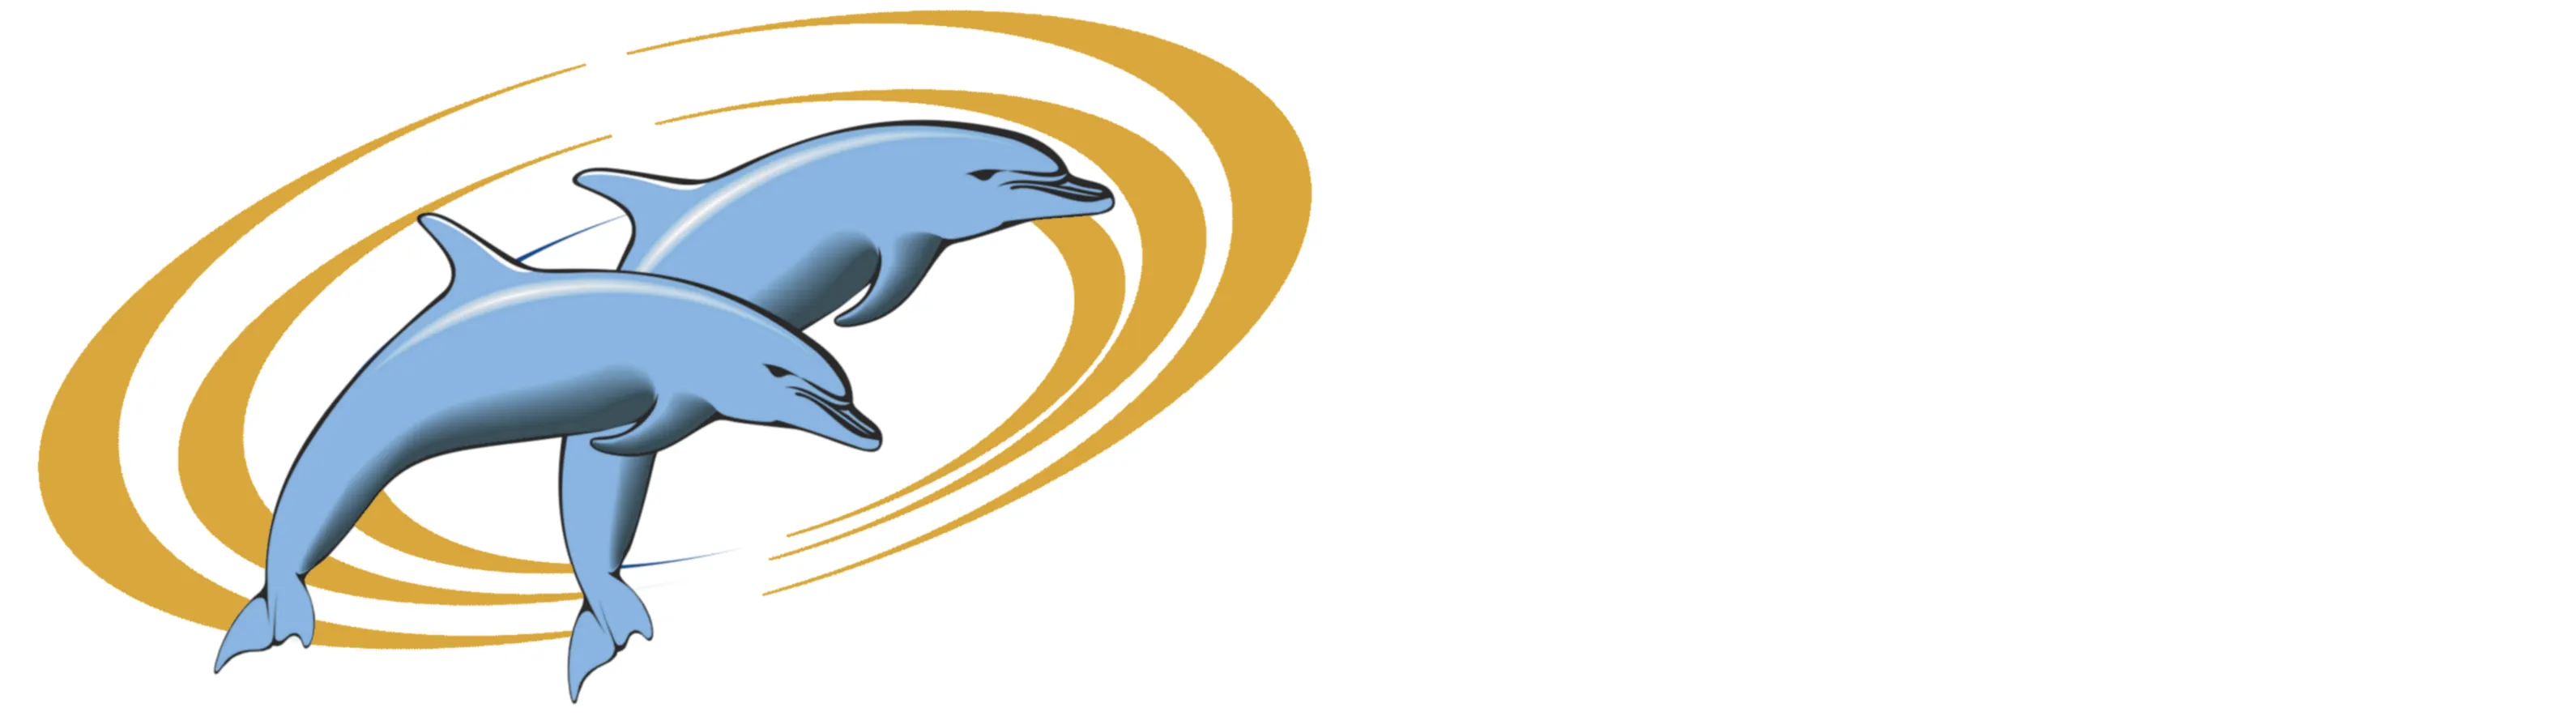 Логотип парлазин дельфины